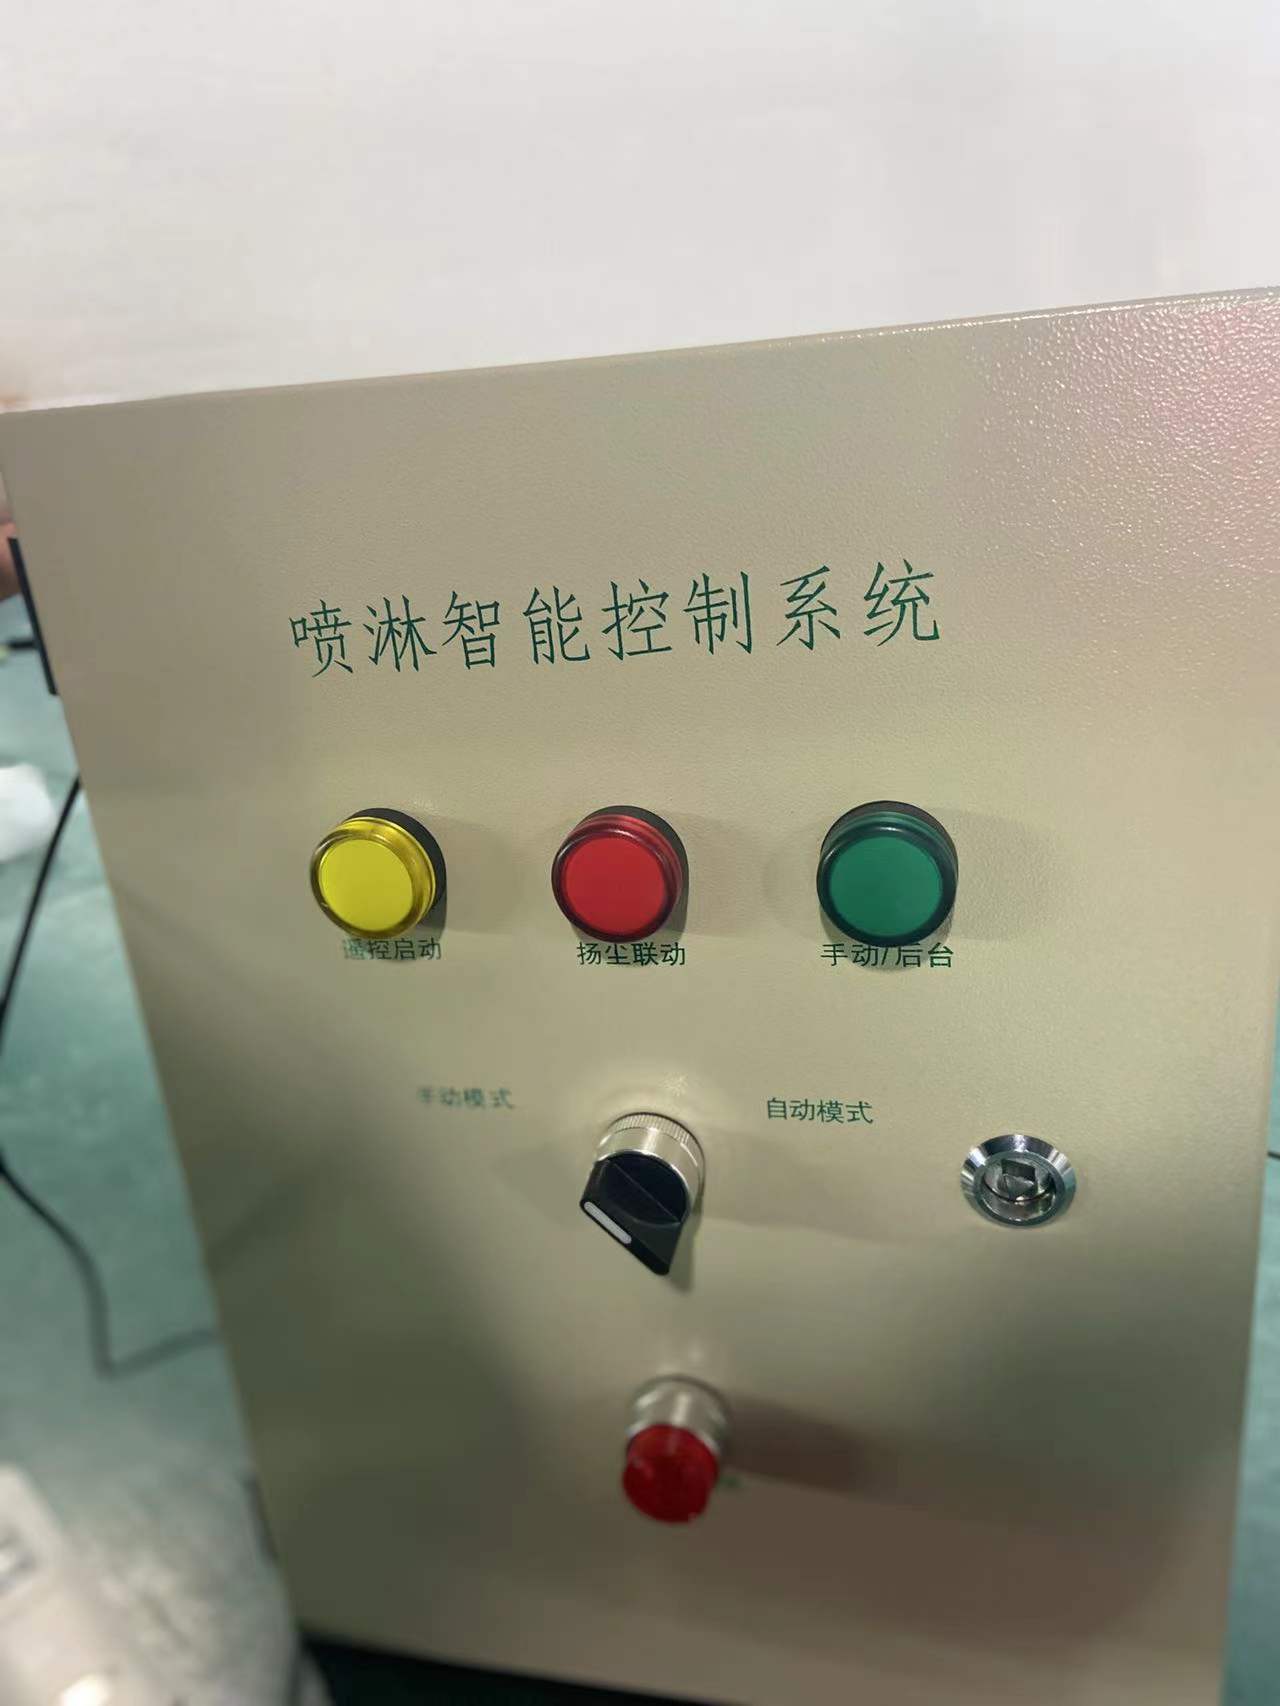 滁州远程联动控制系统厂家 安徽赛芙智能科技有限公司